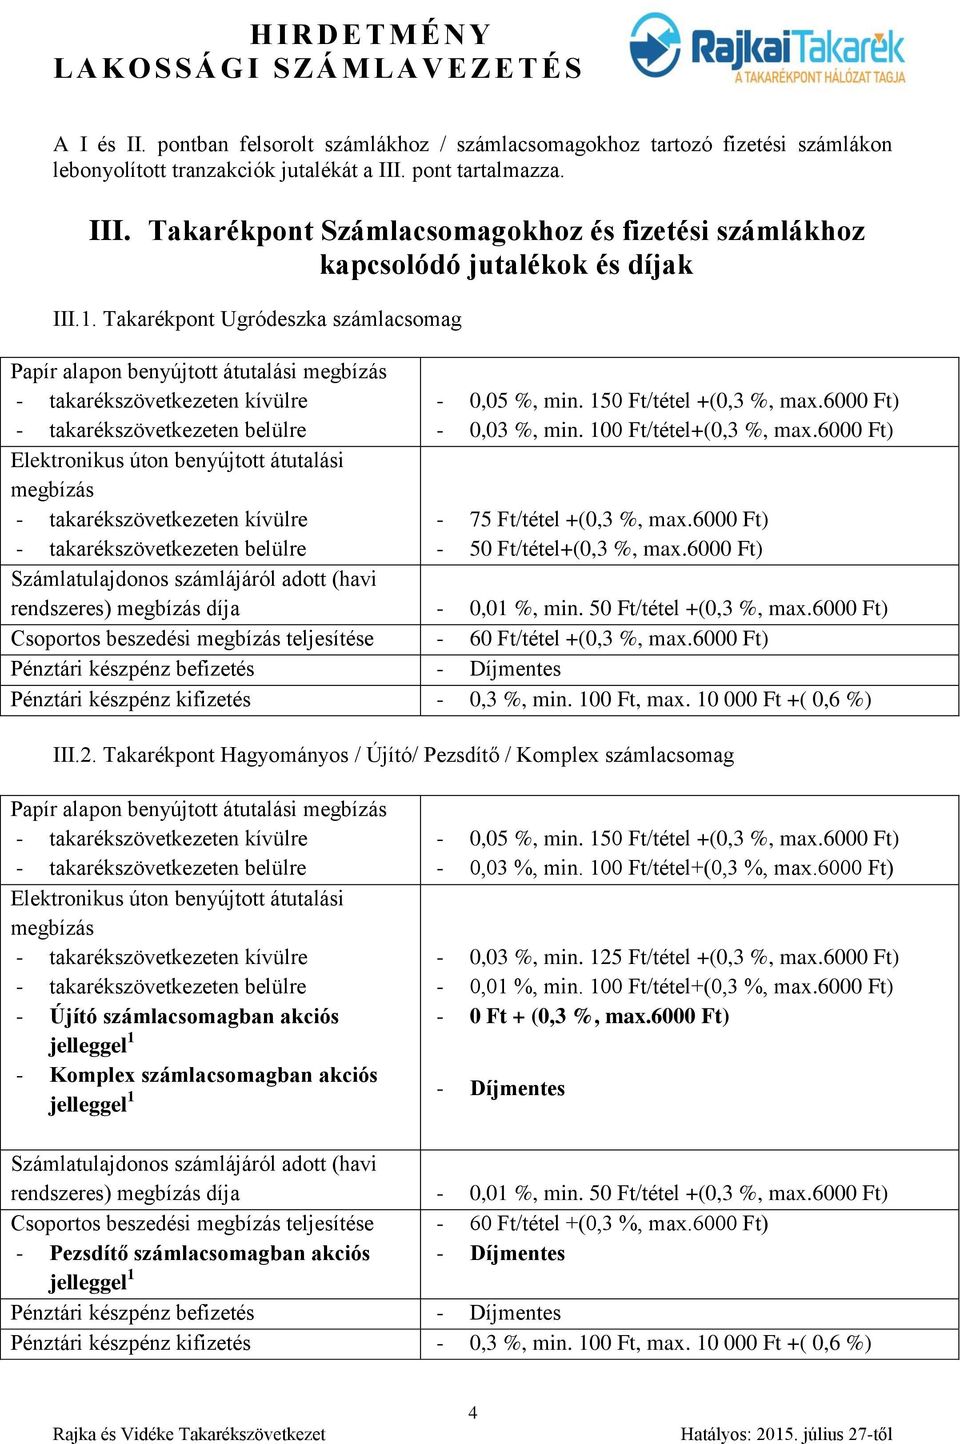 Takarékpont Ugródeszka számlacsomag Papír alapon benyújtott átutalási megbízás Elektronikus úton benyújtott átutalási megbízás - 0,05 %, min. 150 Ft/tétel +(0,3 %, max.6000 Ft) - 0,03 %, min.